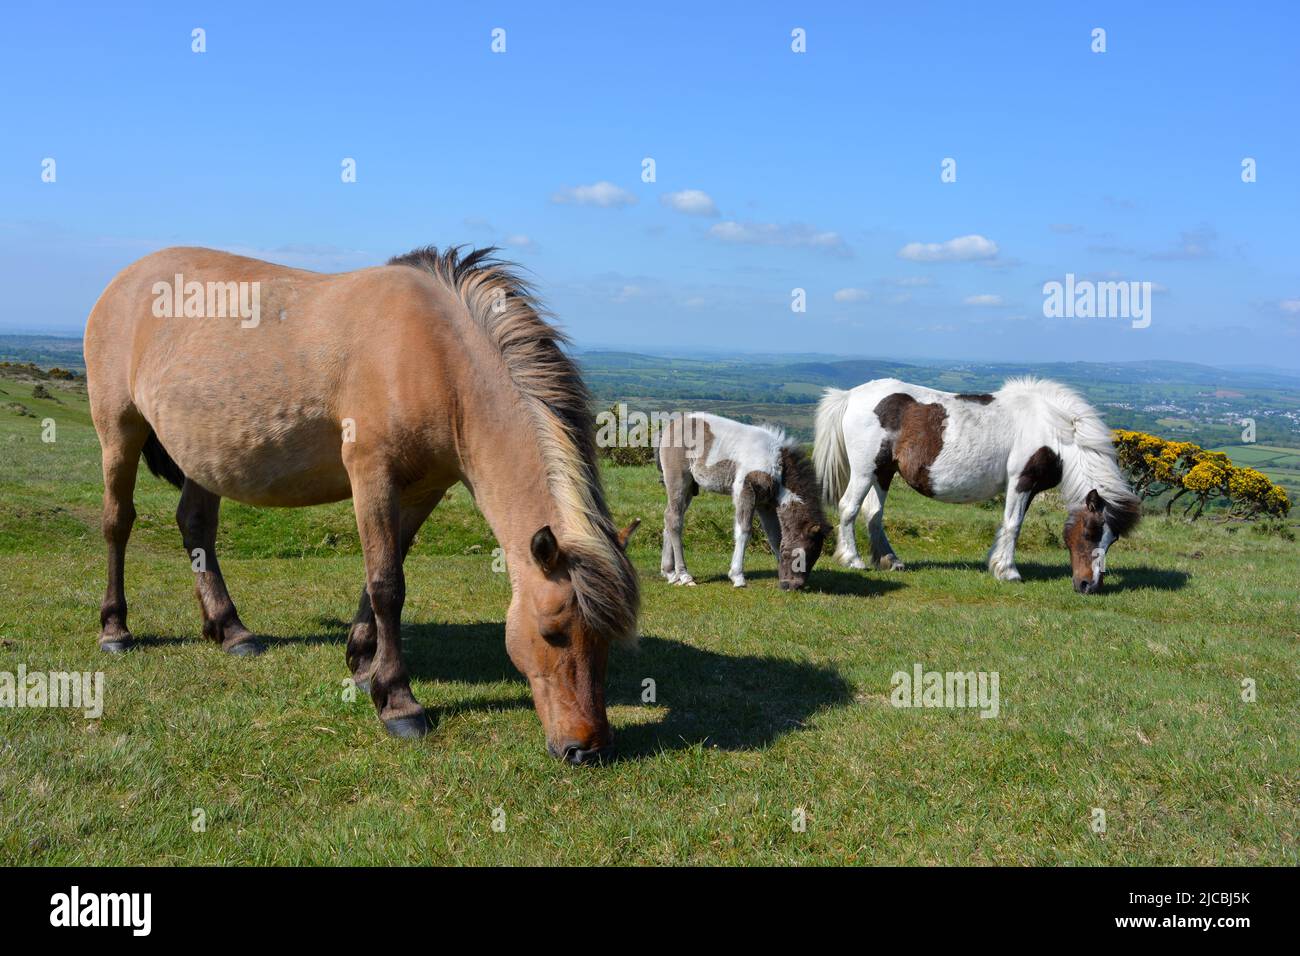 Dartmoor ponies roam free on Whitchurch Common in Dartmoor National Park, Devon, UK Stock Photo